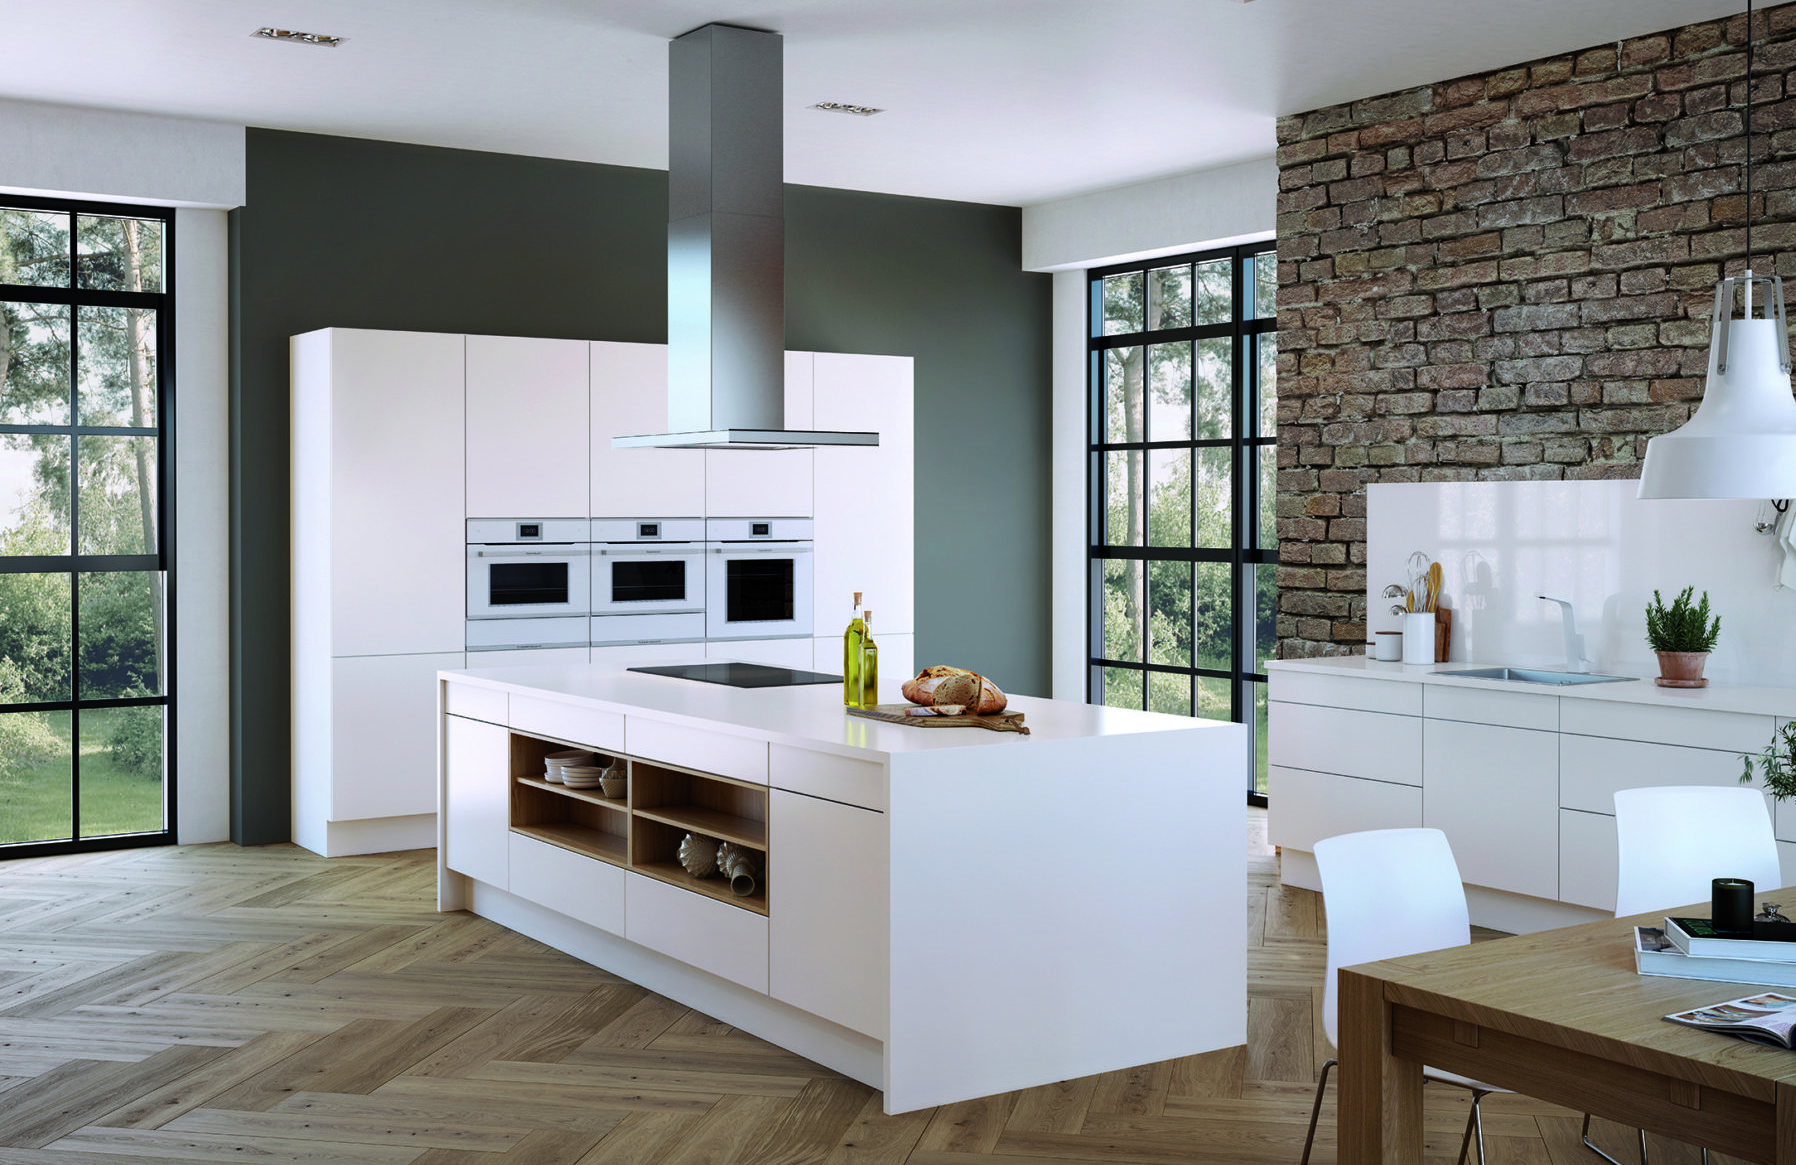 Максимальная свобода в дизайне кухонного интерьера от Küppersbusch